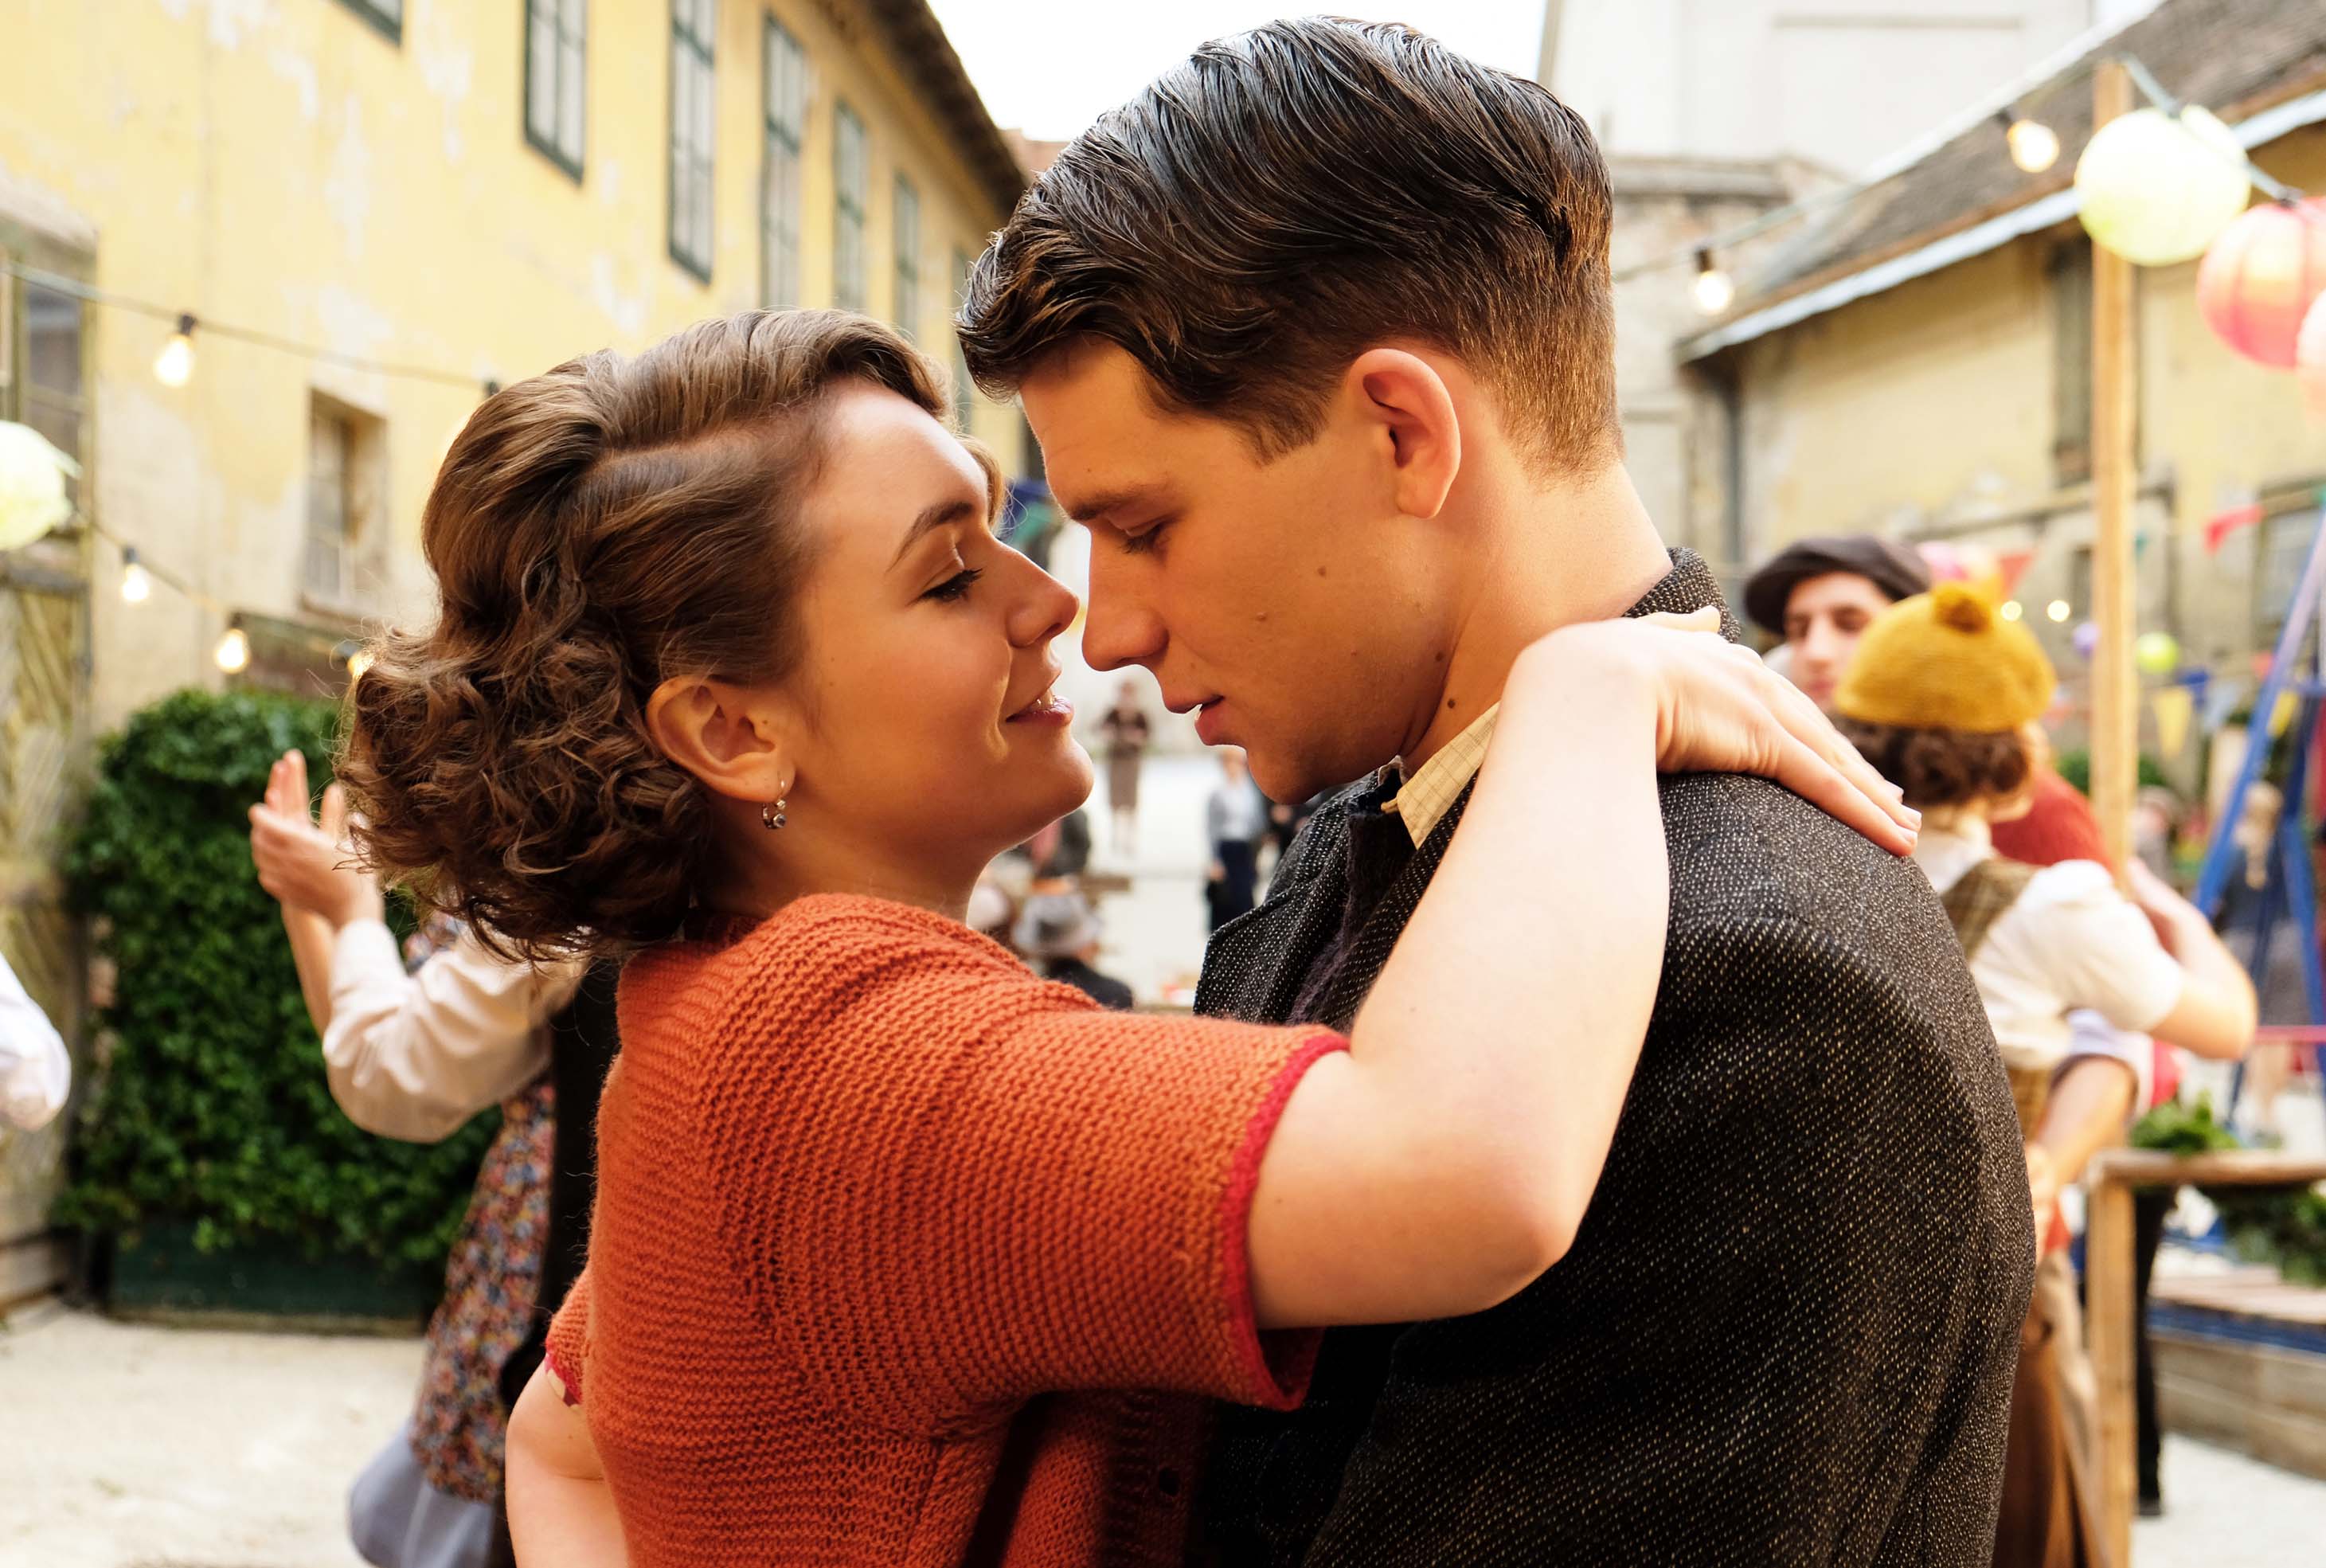 Der Trafikant (Simon Morzé) verliebt sich in die Böhmin Anezka (Emma Drogunova). Man sieht die beiden innig miteinander tanzen. Foto: Tobis Film GmbH